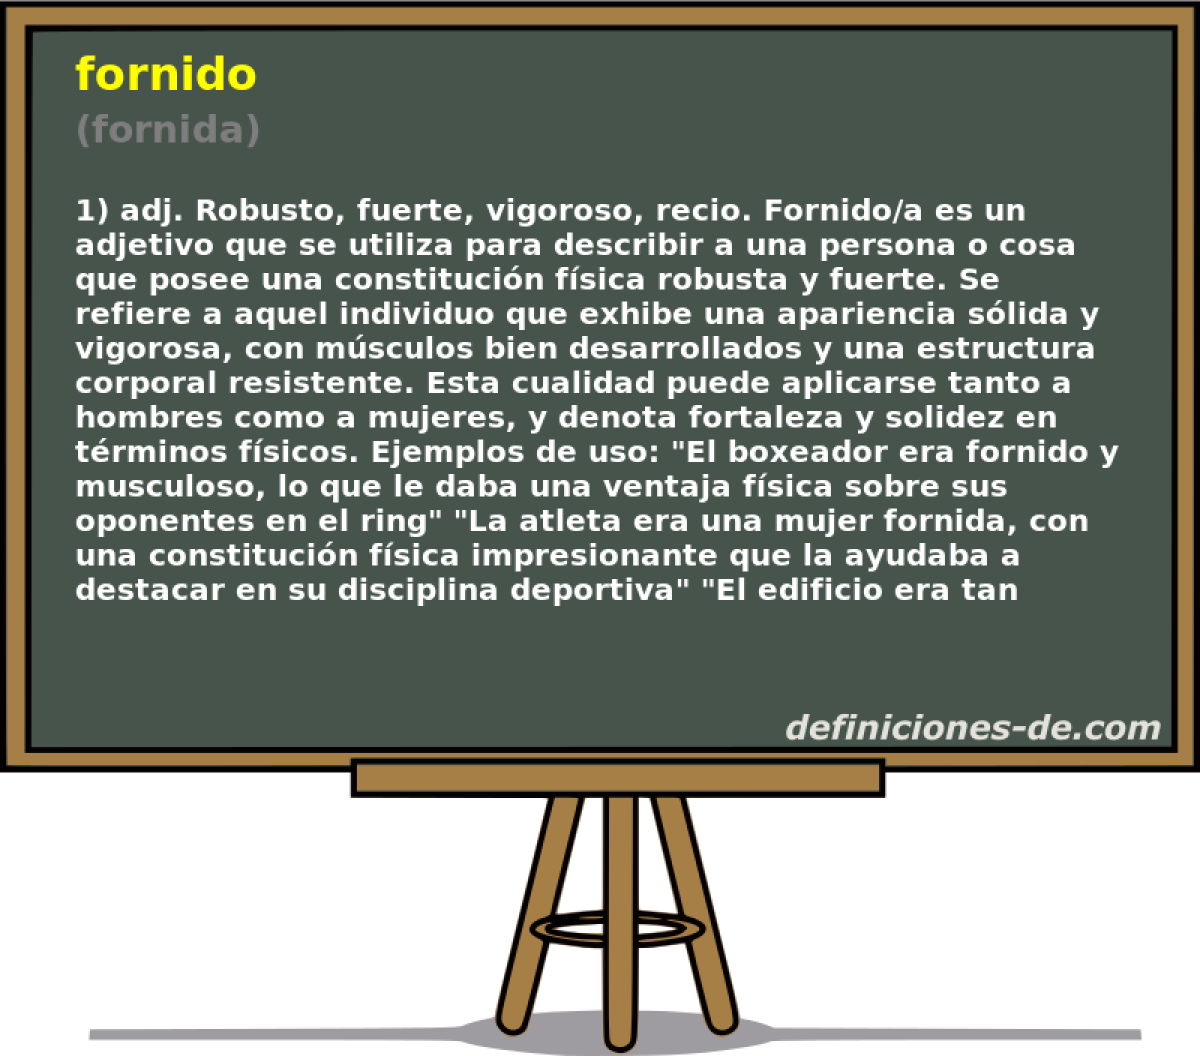 fornido (fornida)